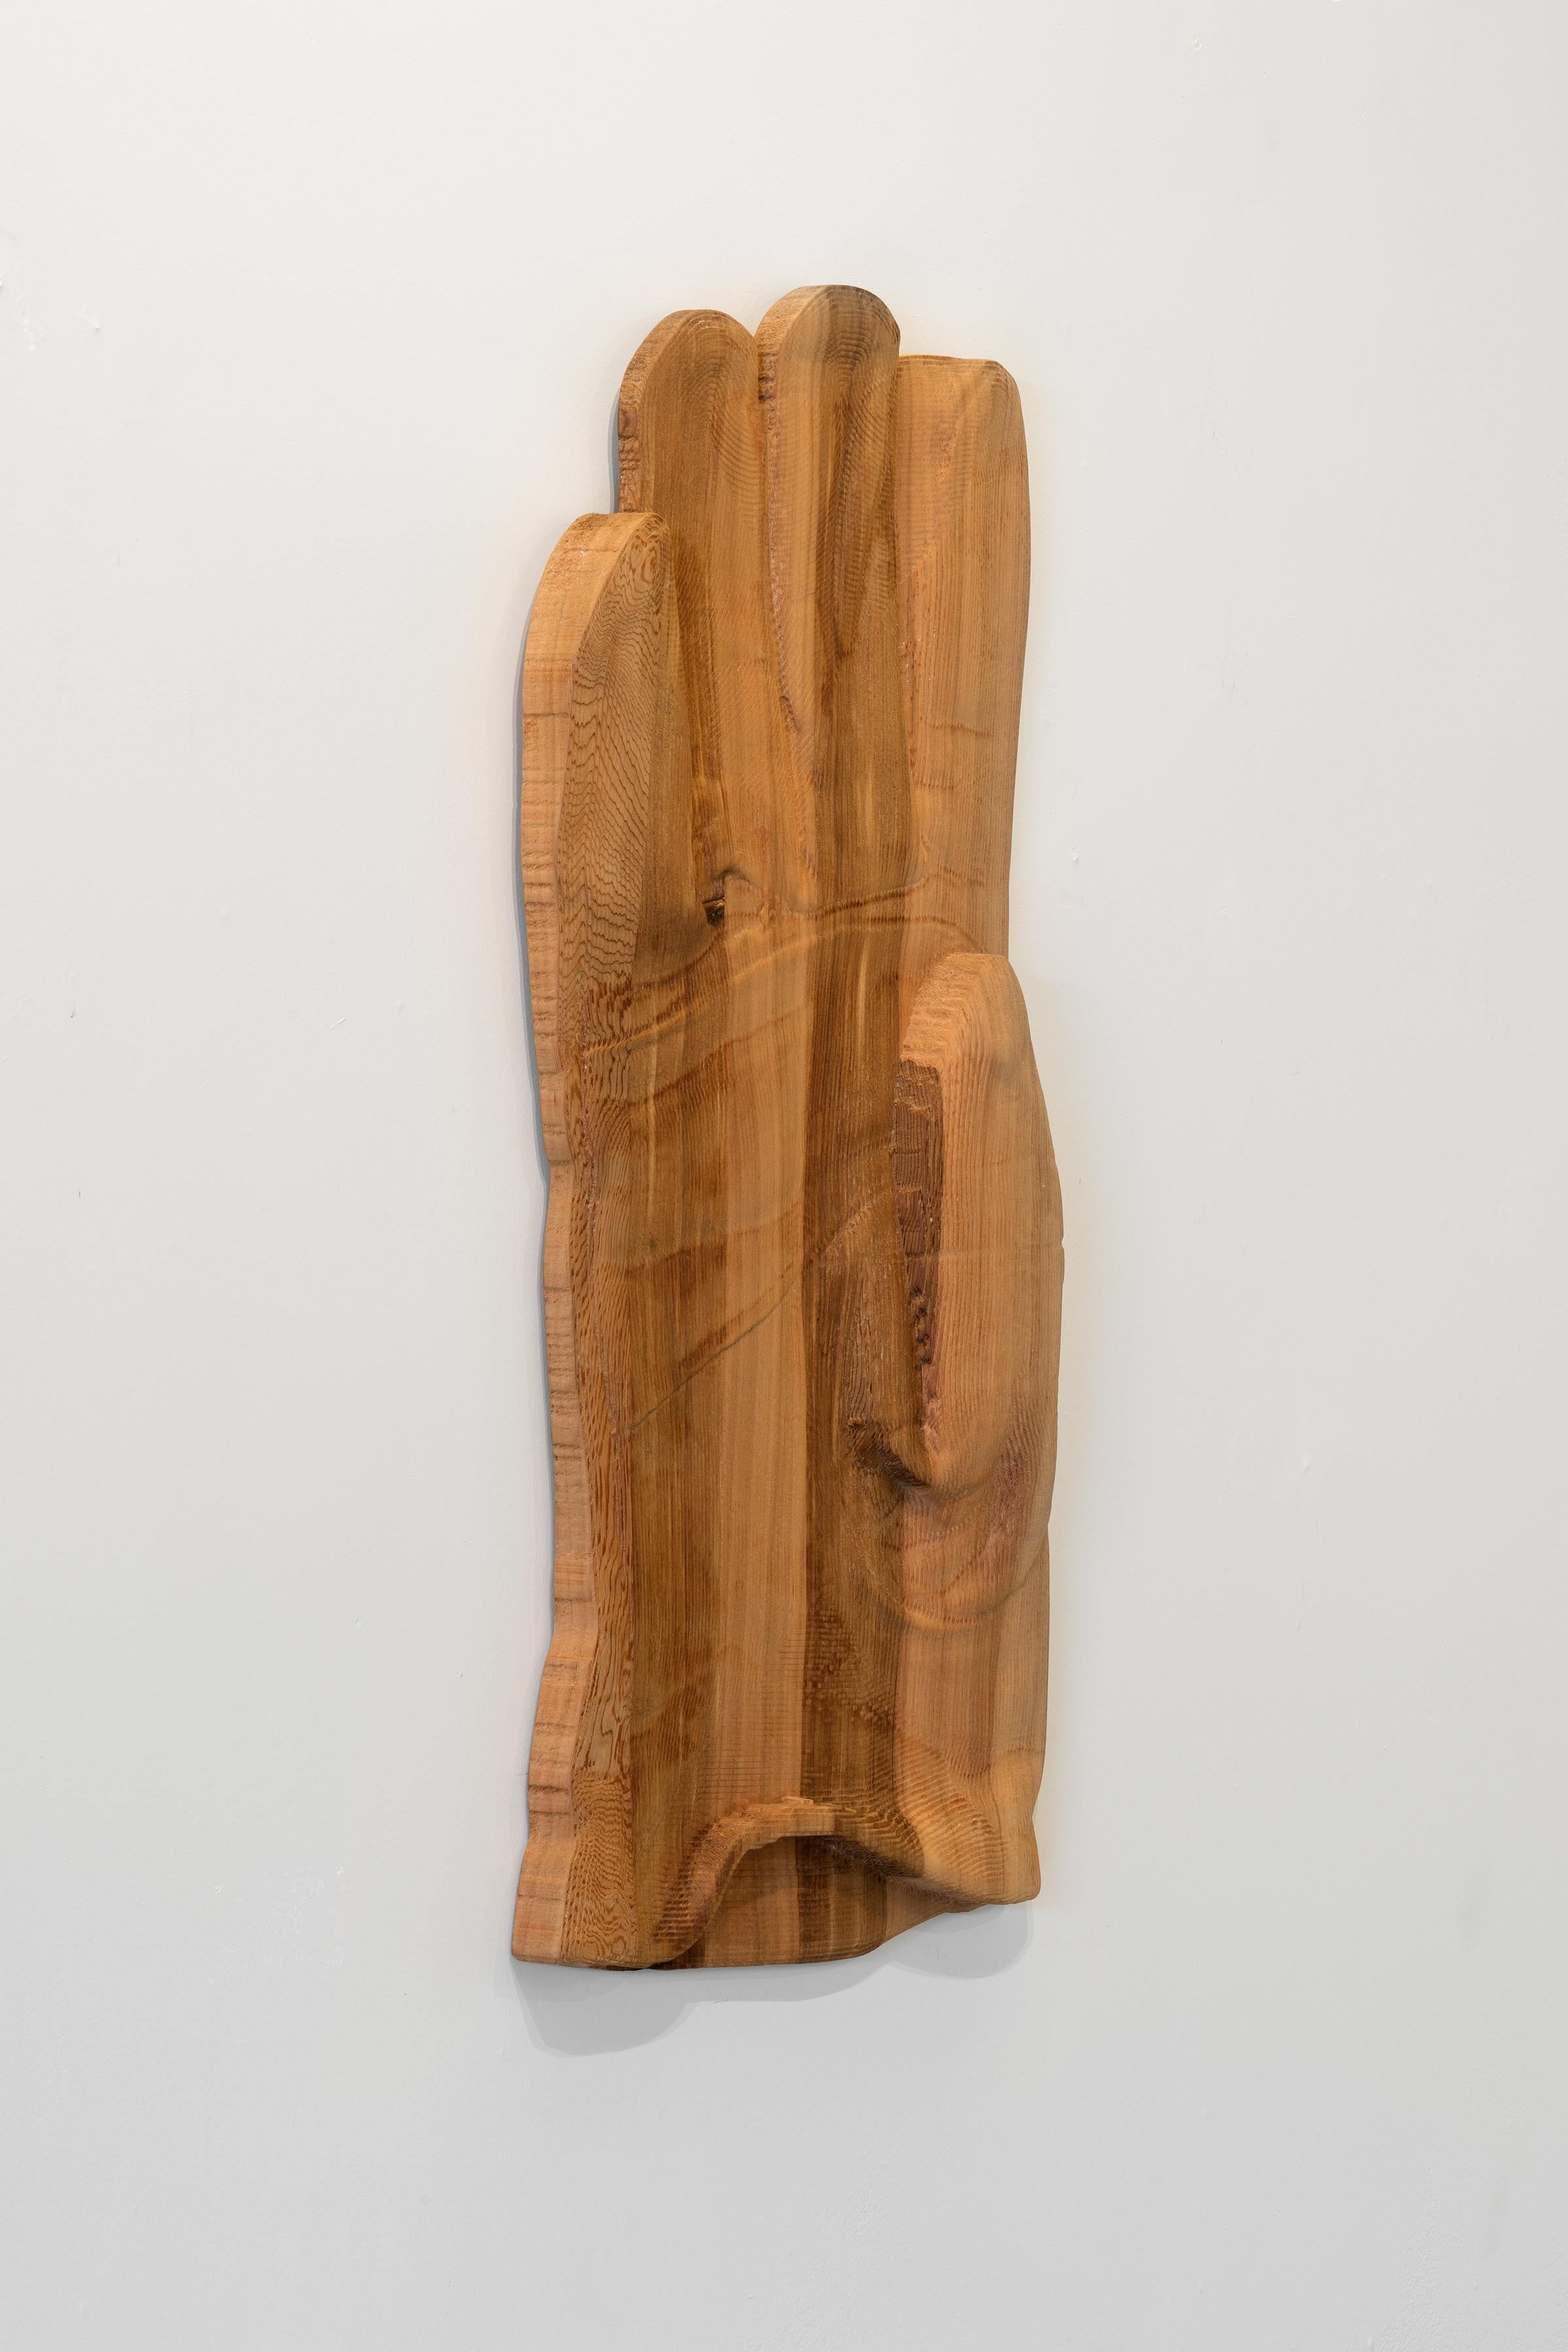 DÉGLOVING - Sculpture en bois teinté d'une gant de travail  - Marron Figurative Sculpture par Ray Padron